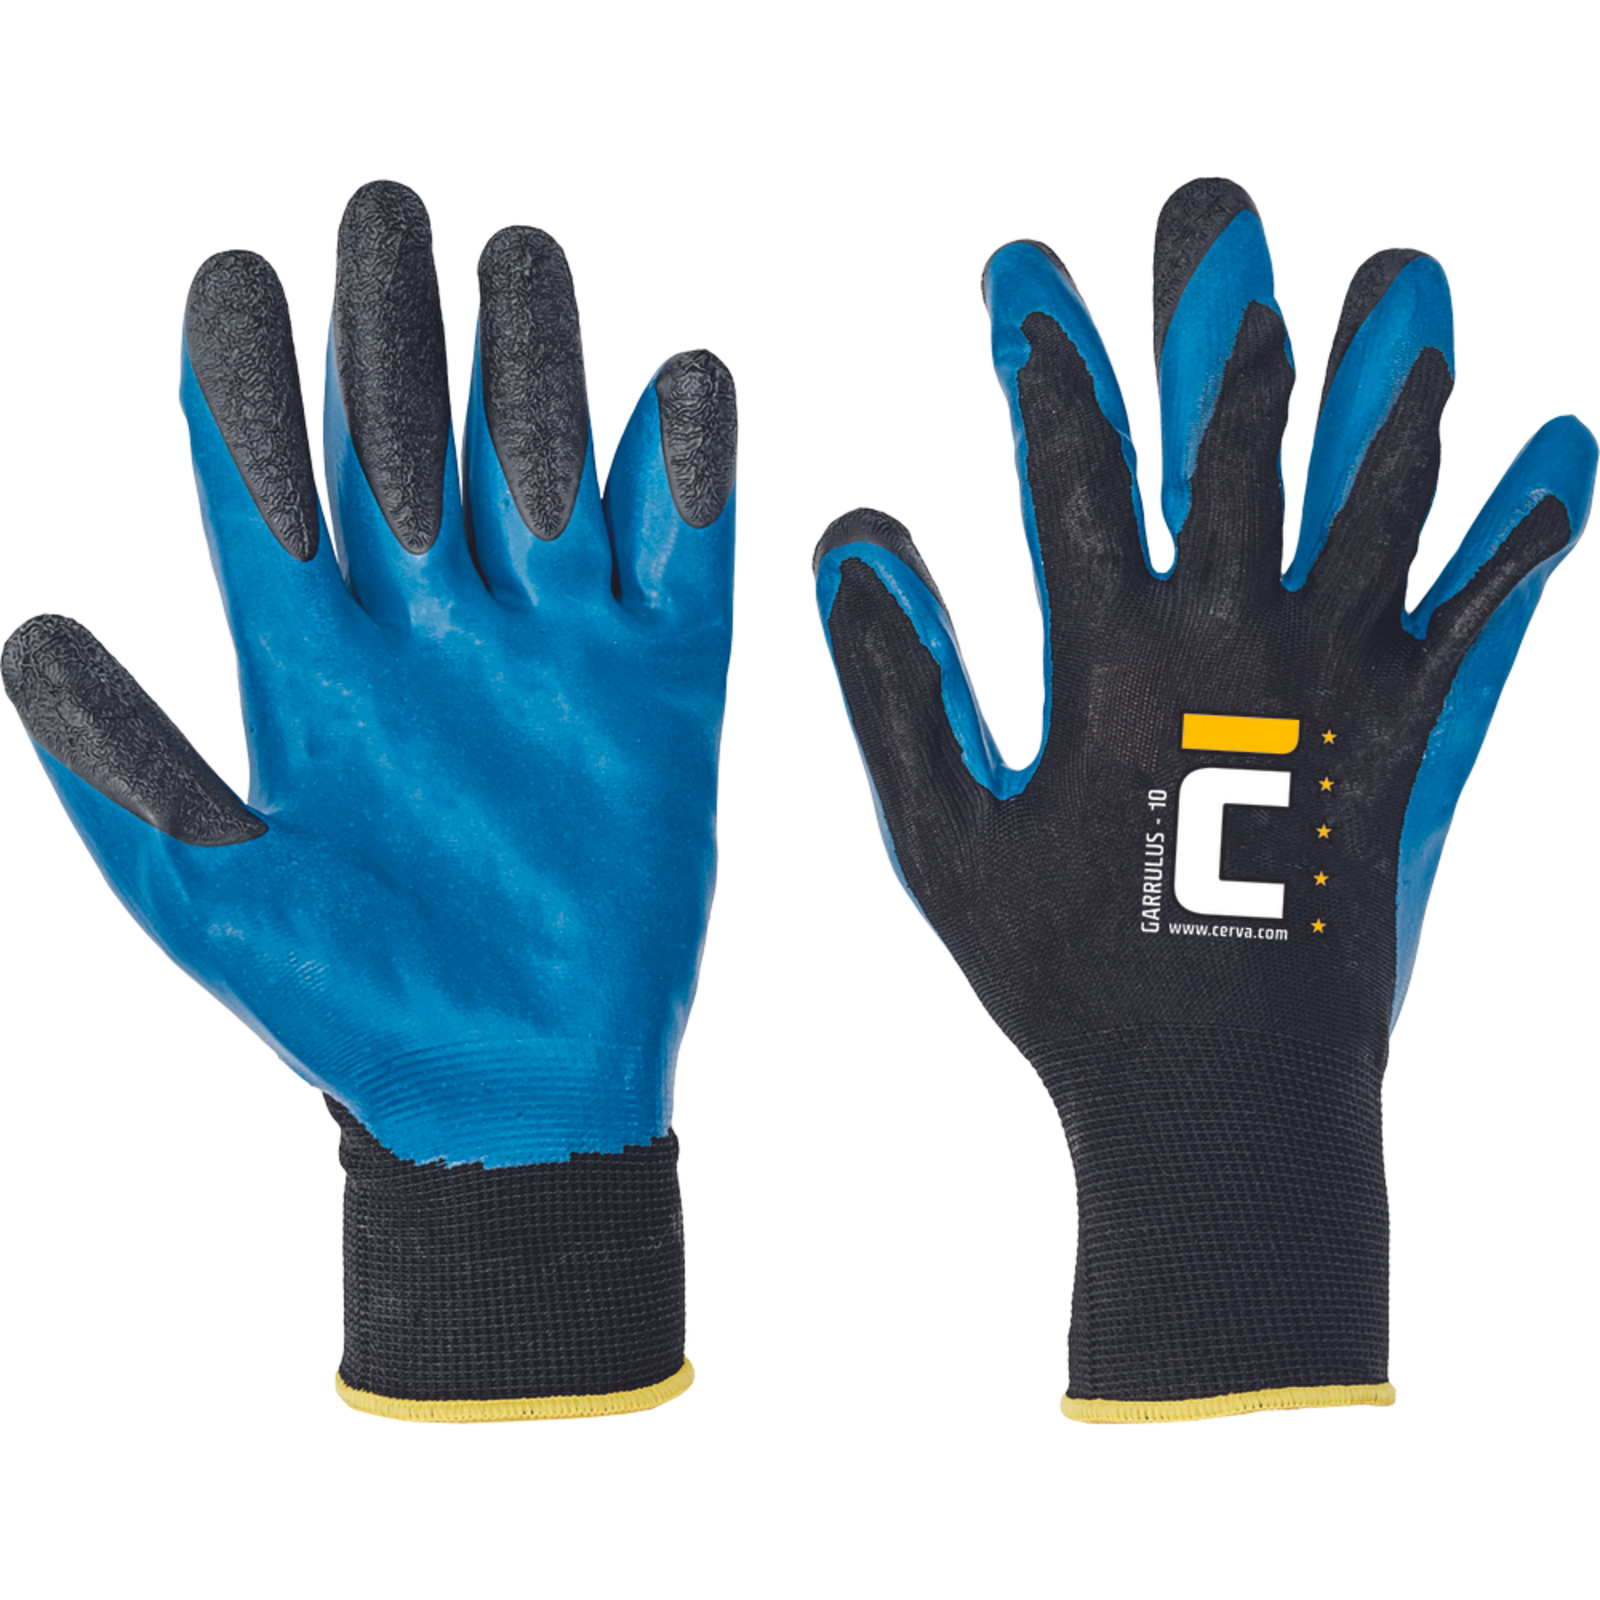 Pracovné rukavice Cerva Garrulus, mechanické - univerzálne, máčané latex - veľkosť: 10/XL, farba: modrá/čierna